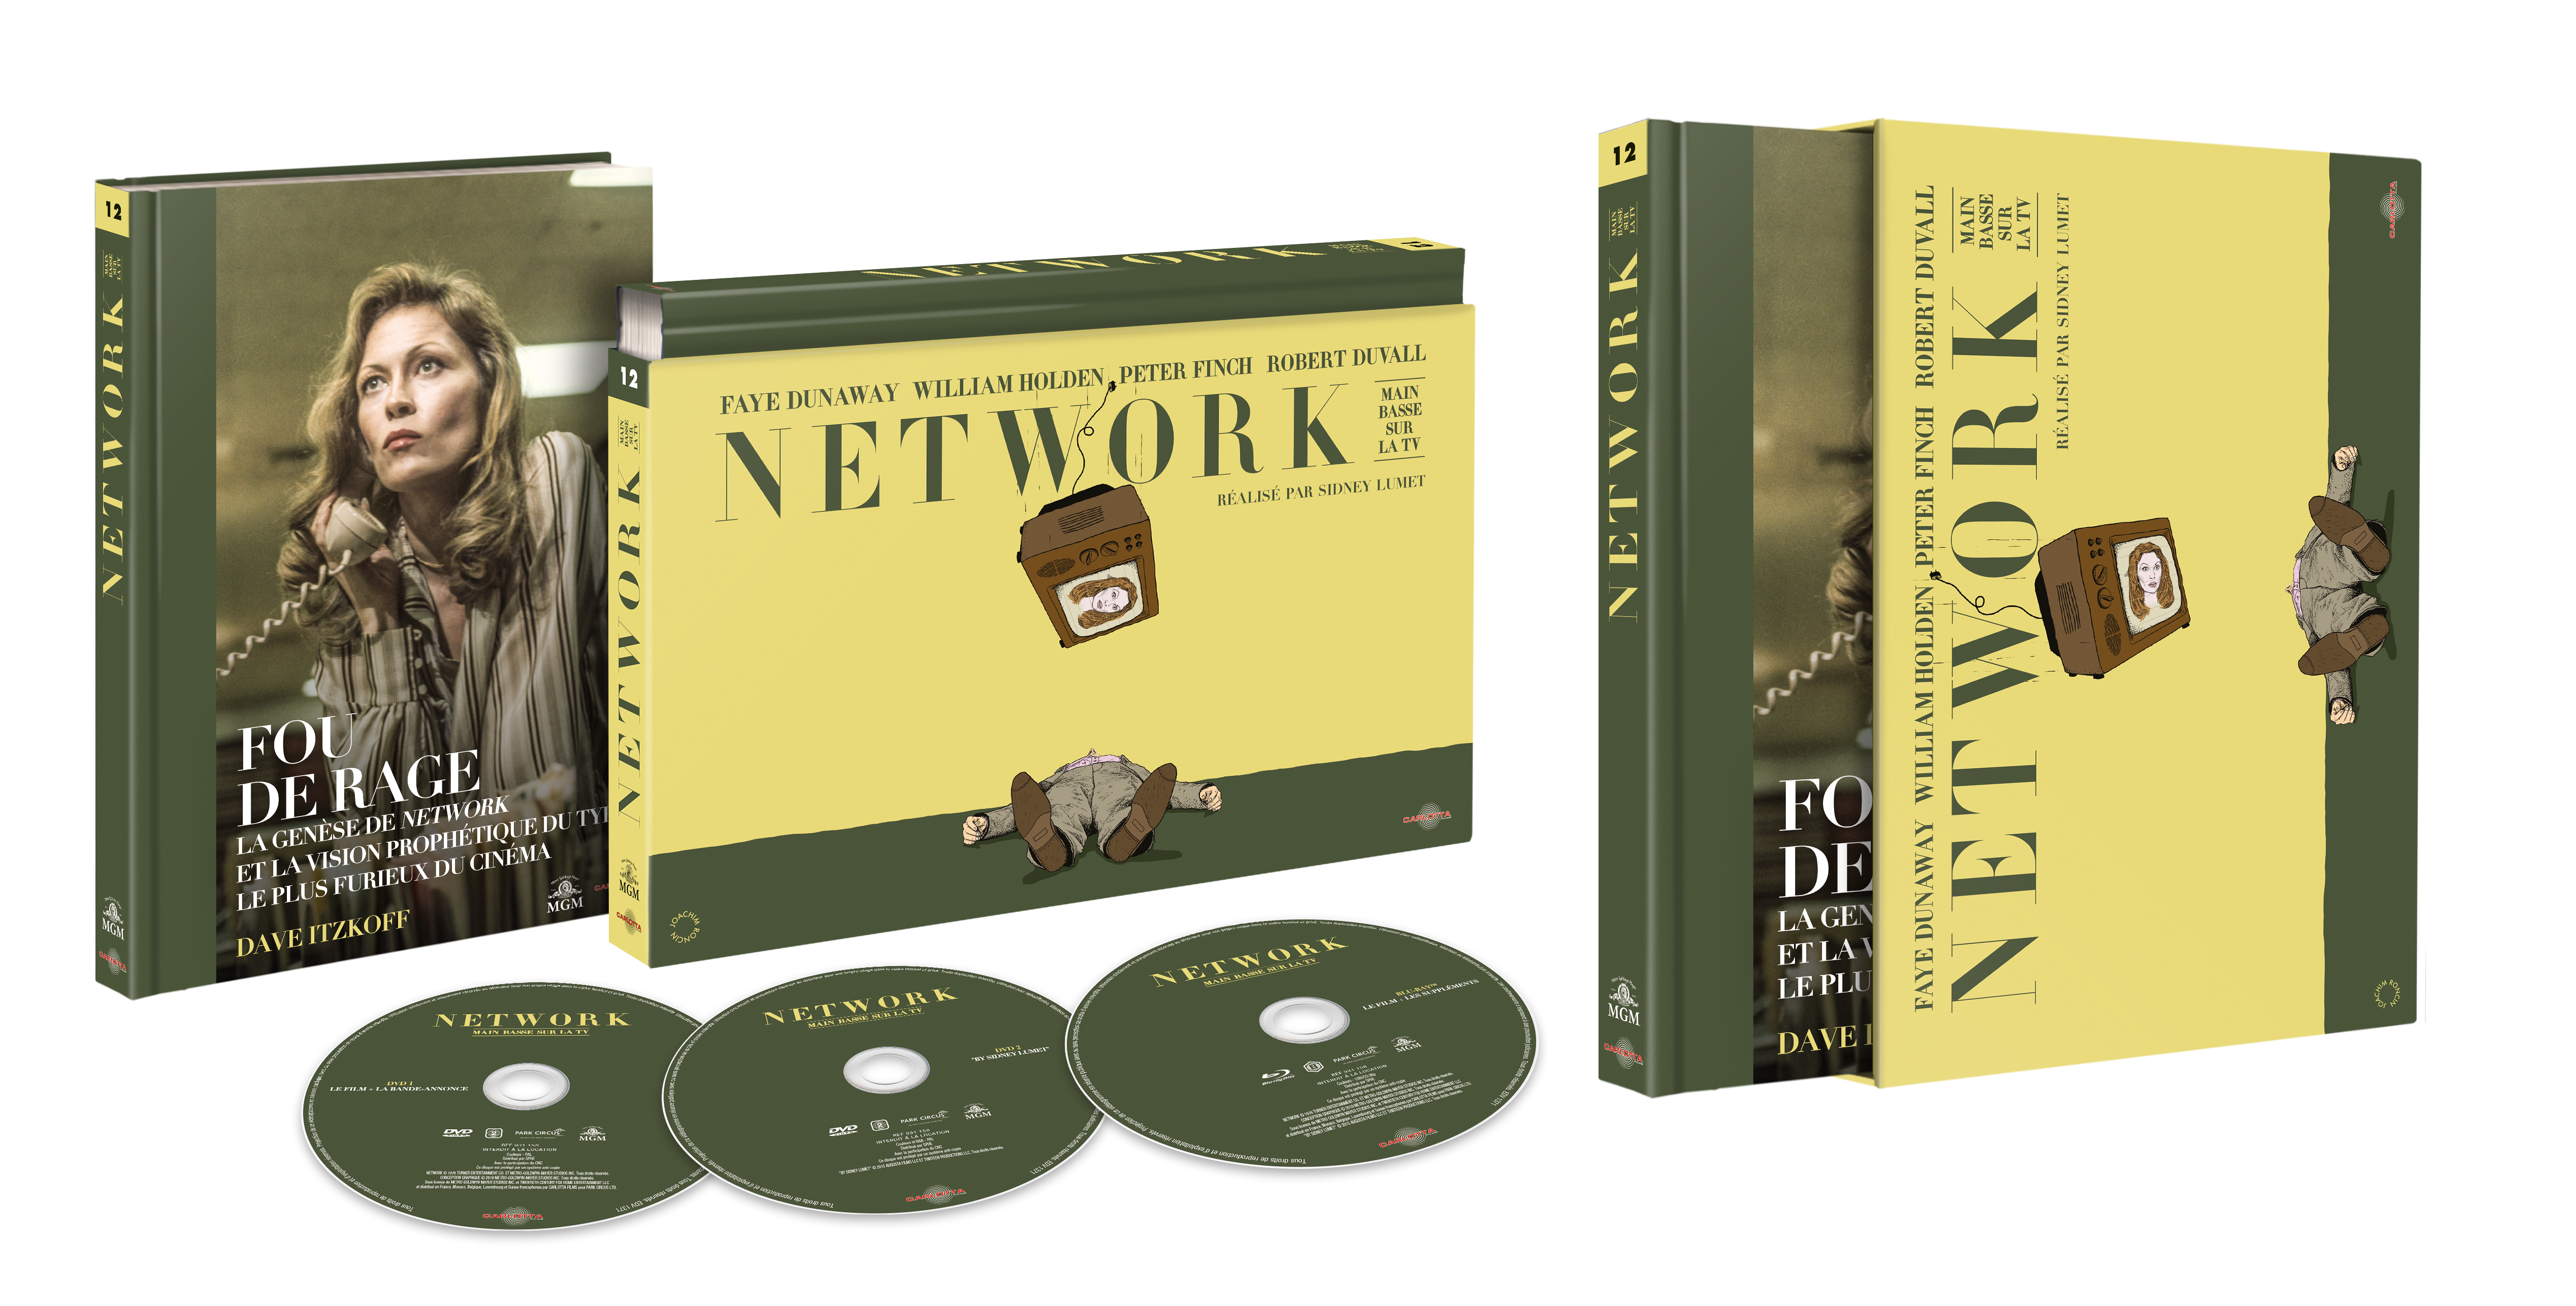 Network, main basse sur la TV - Coffret Ultra Collector 12 - Blu-ray + DVD + Livre - CARLOTTA FILMS - La Boutique